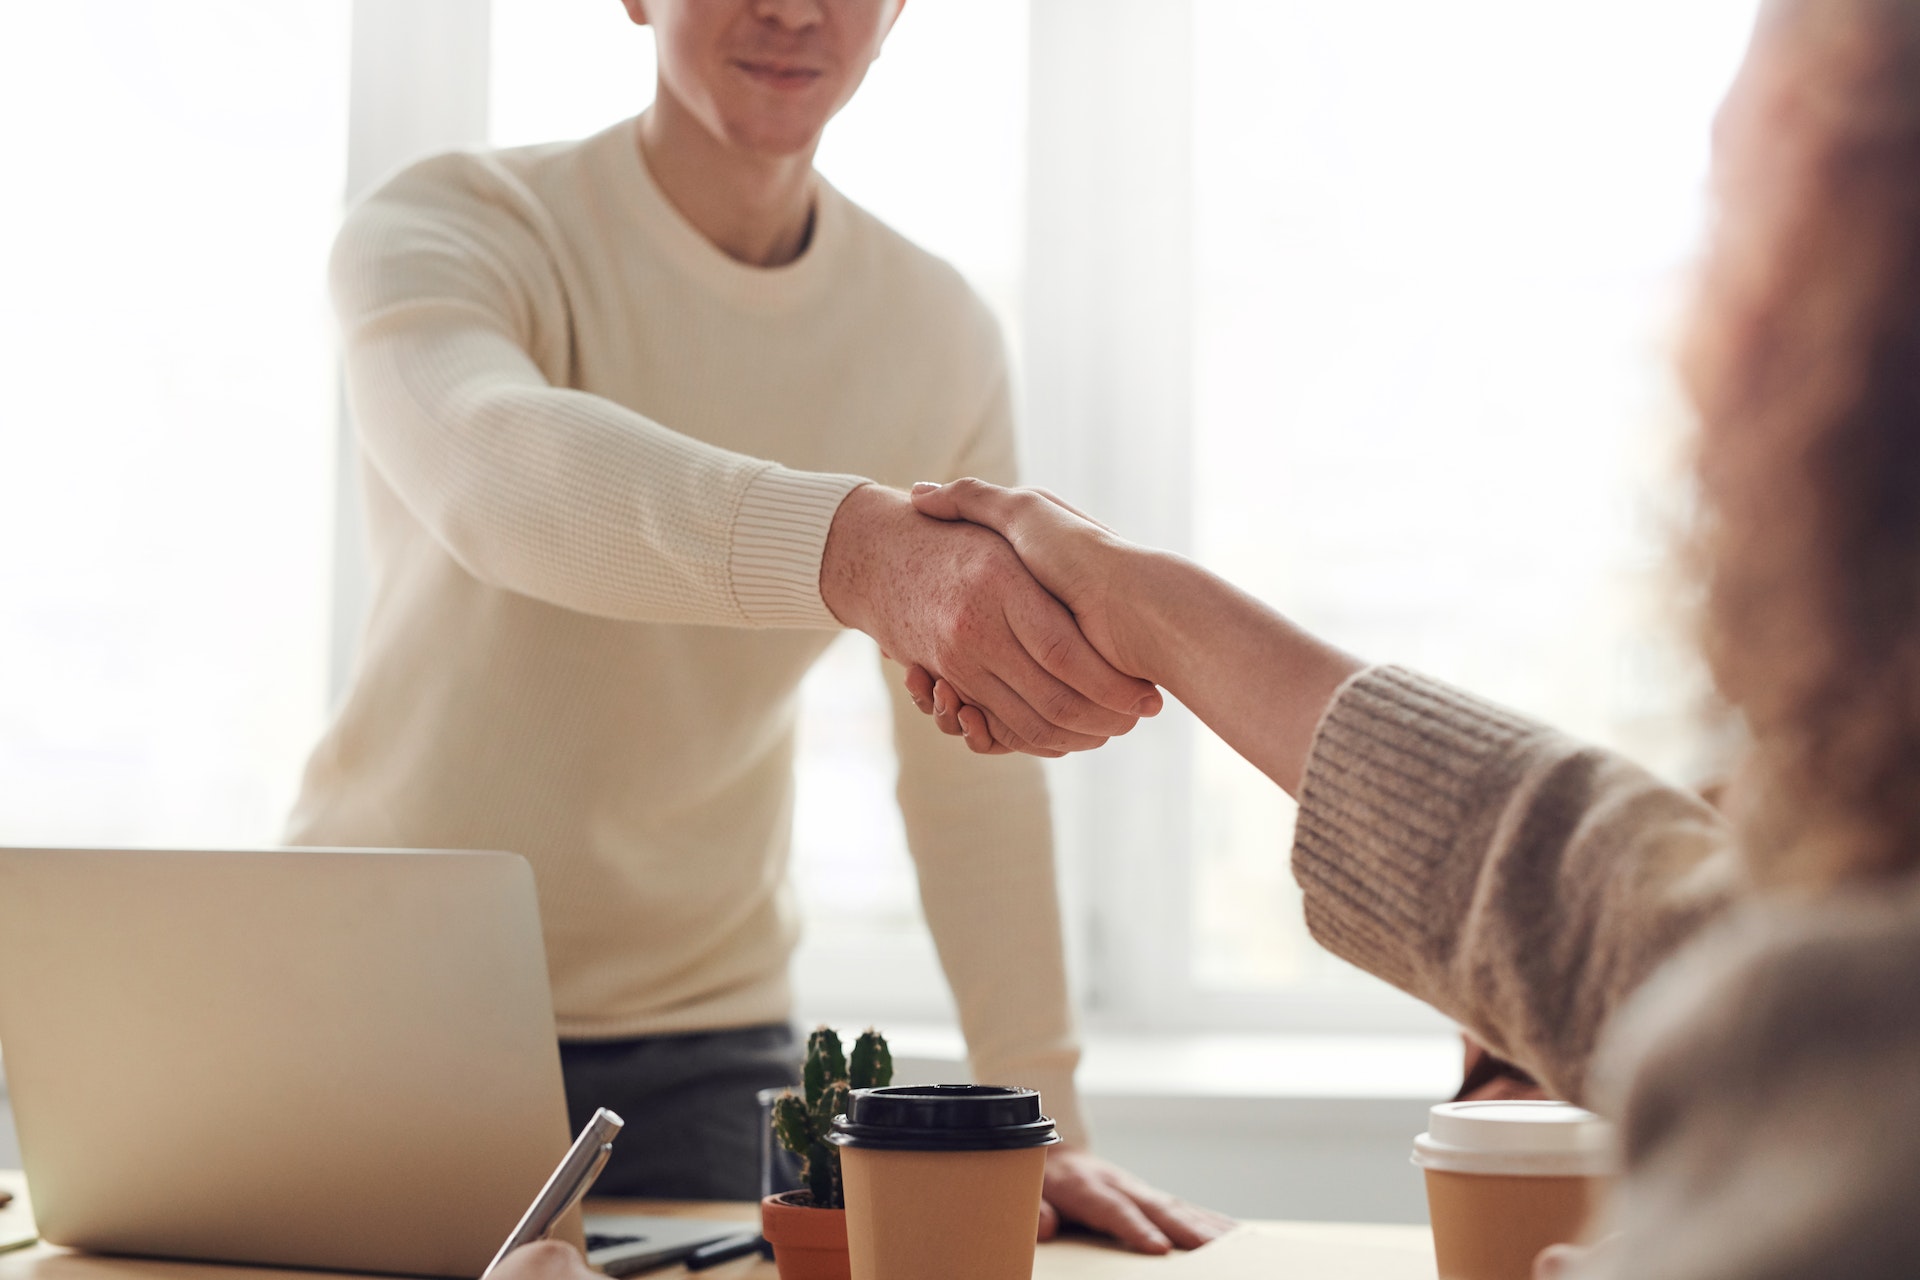 marketing-internship-interview-questions-handshake